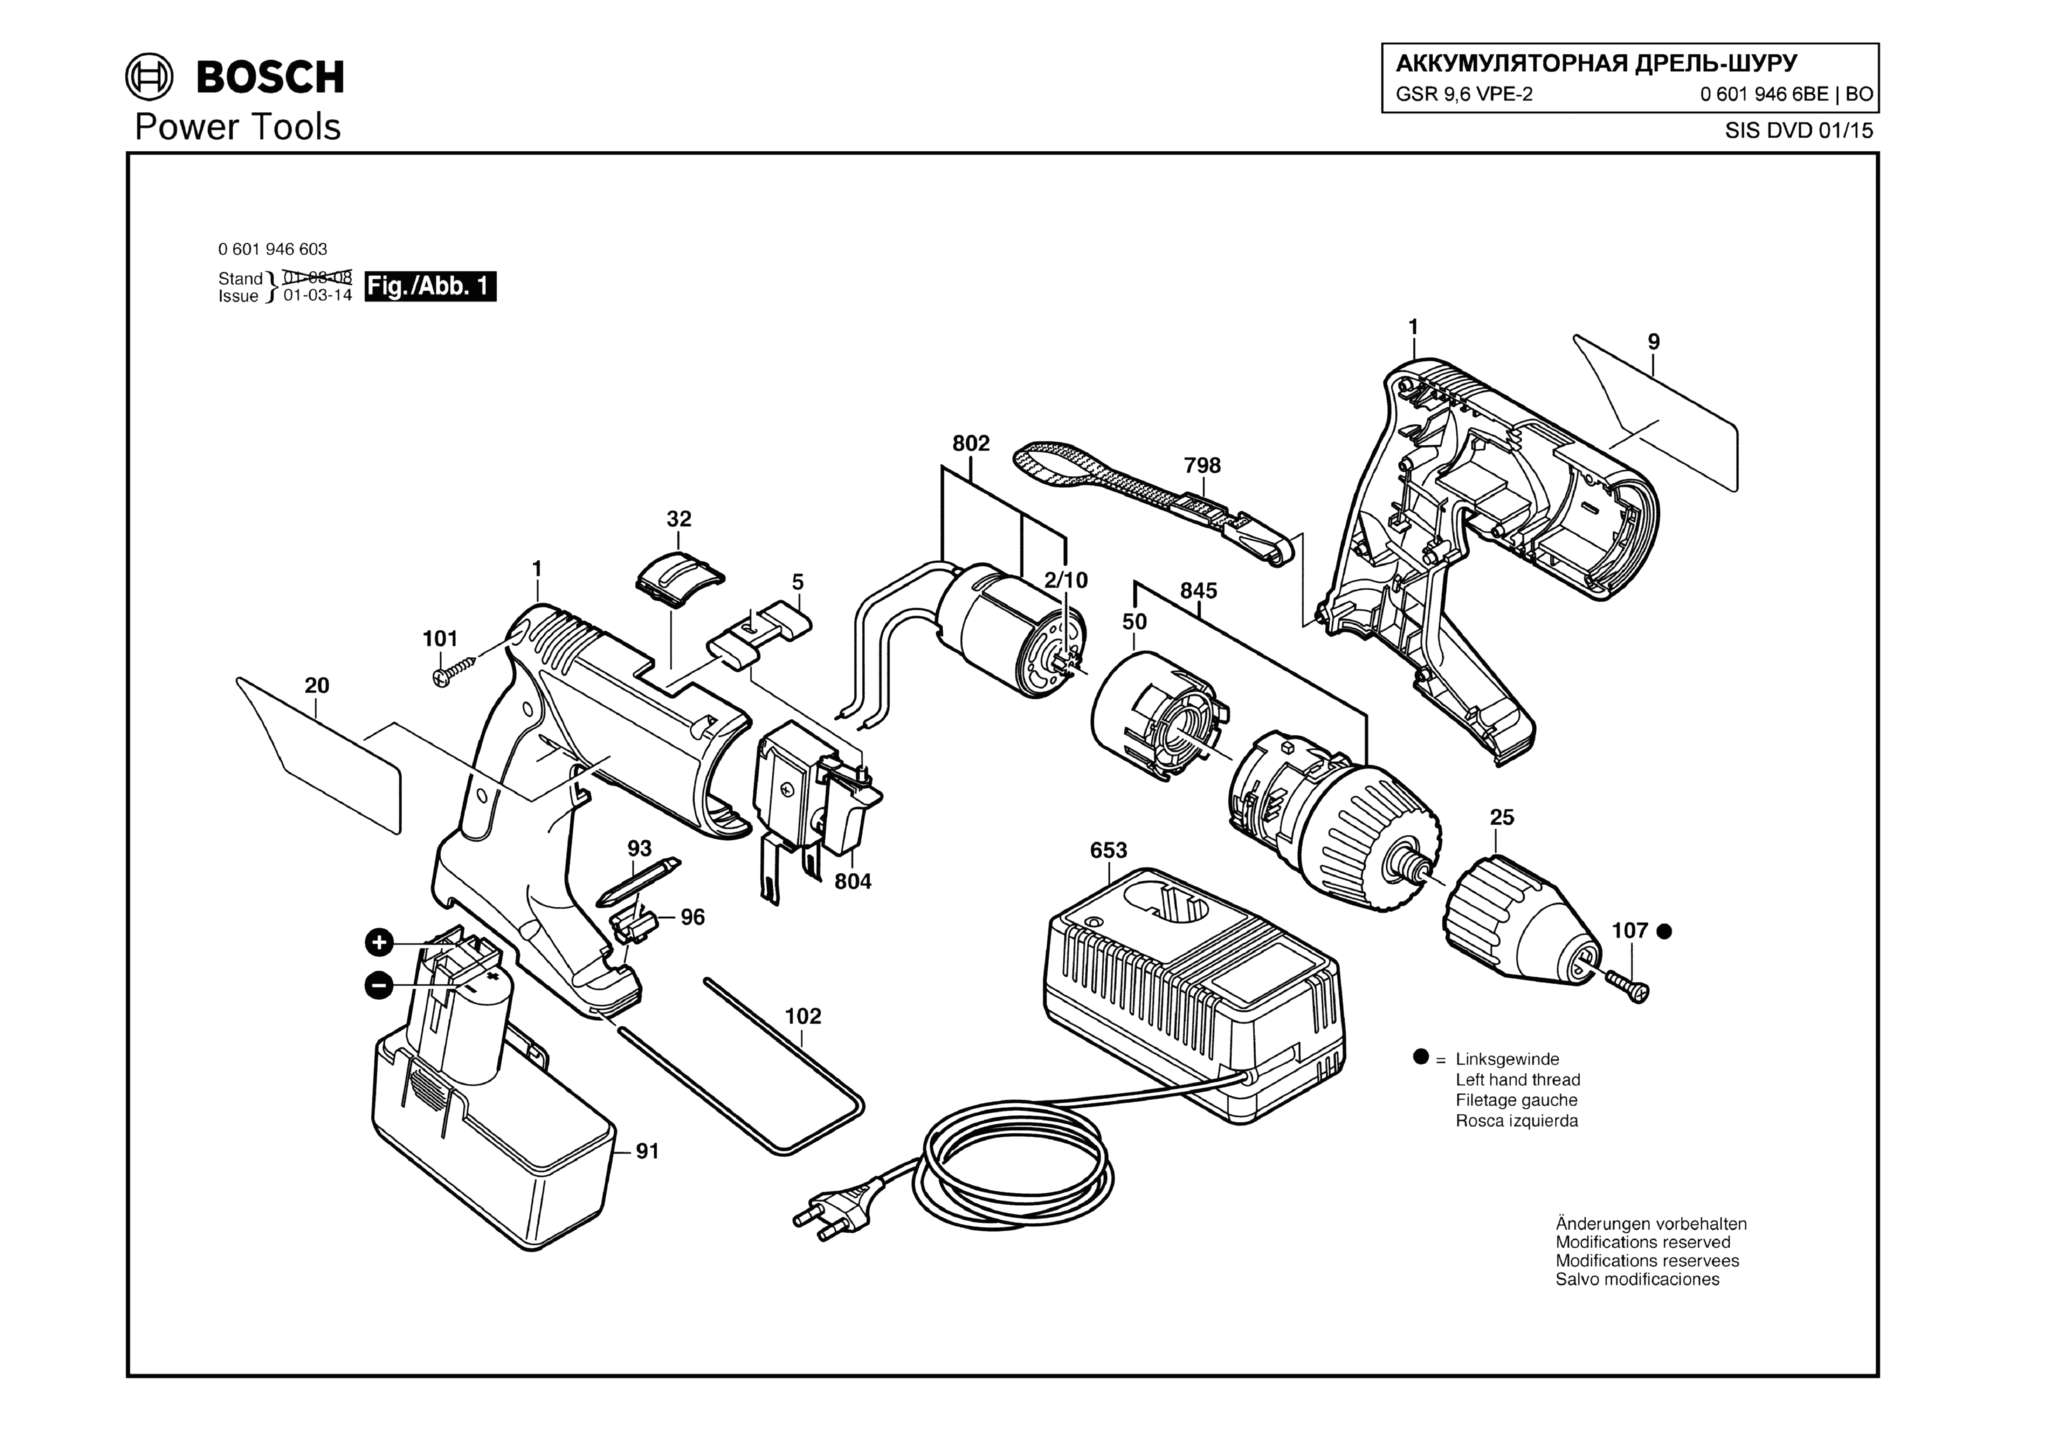 Запчасти, схема и деталировка Bosch GSR 9,6 VPE-2 (ТИП 06019466BE)